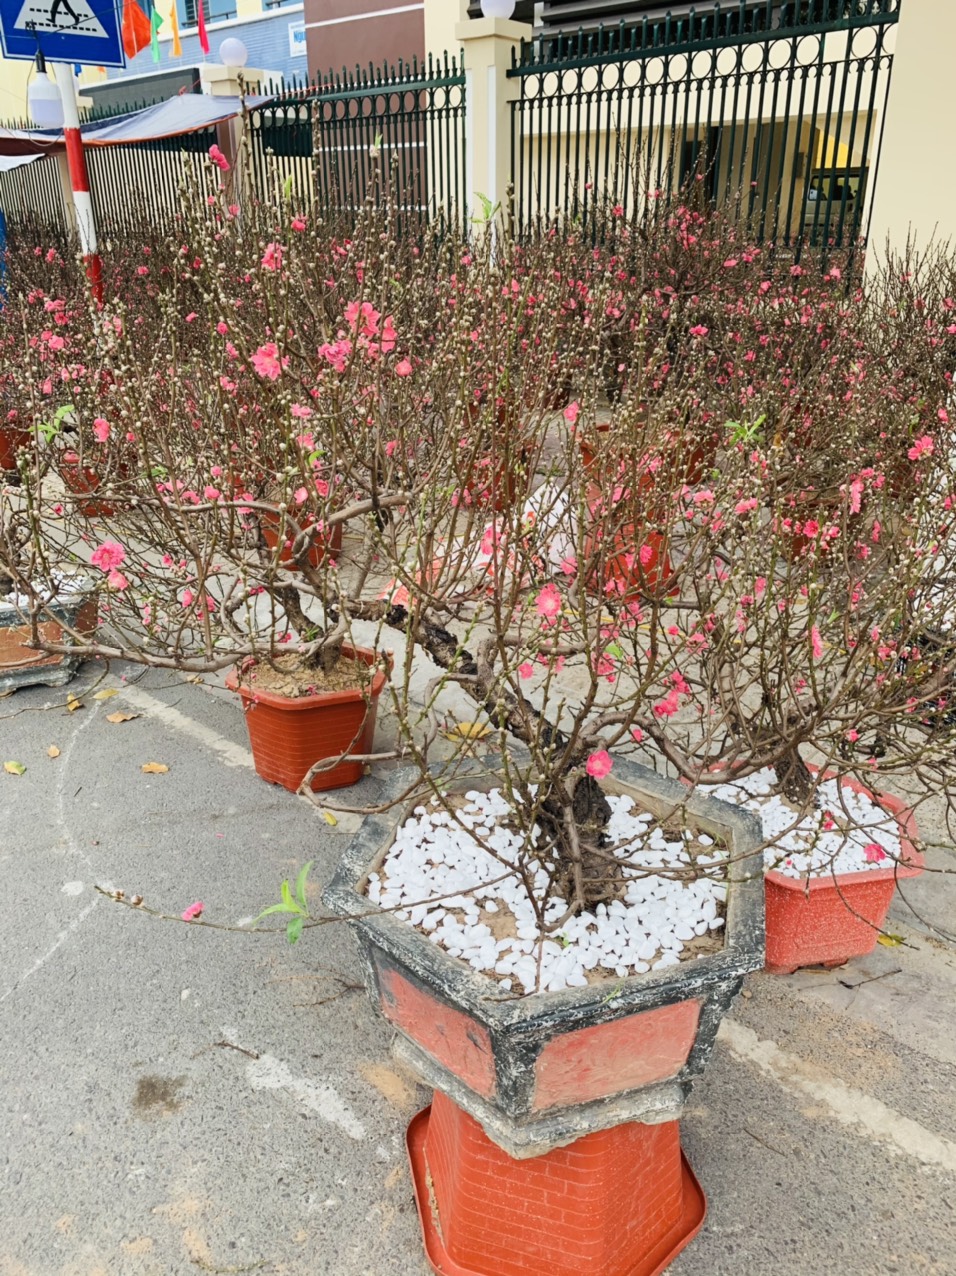 Vài năm nay, hoa đào miền Bắc cũng được đem vào bán ở Nha Trang. So với những năm trước năm nay hoa đào đẹp hơn